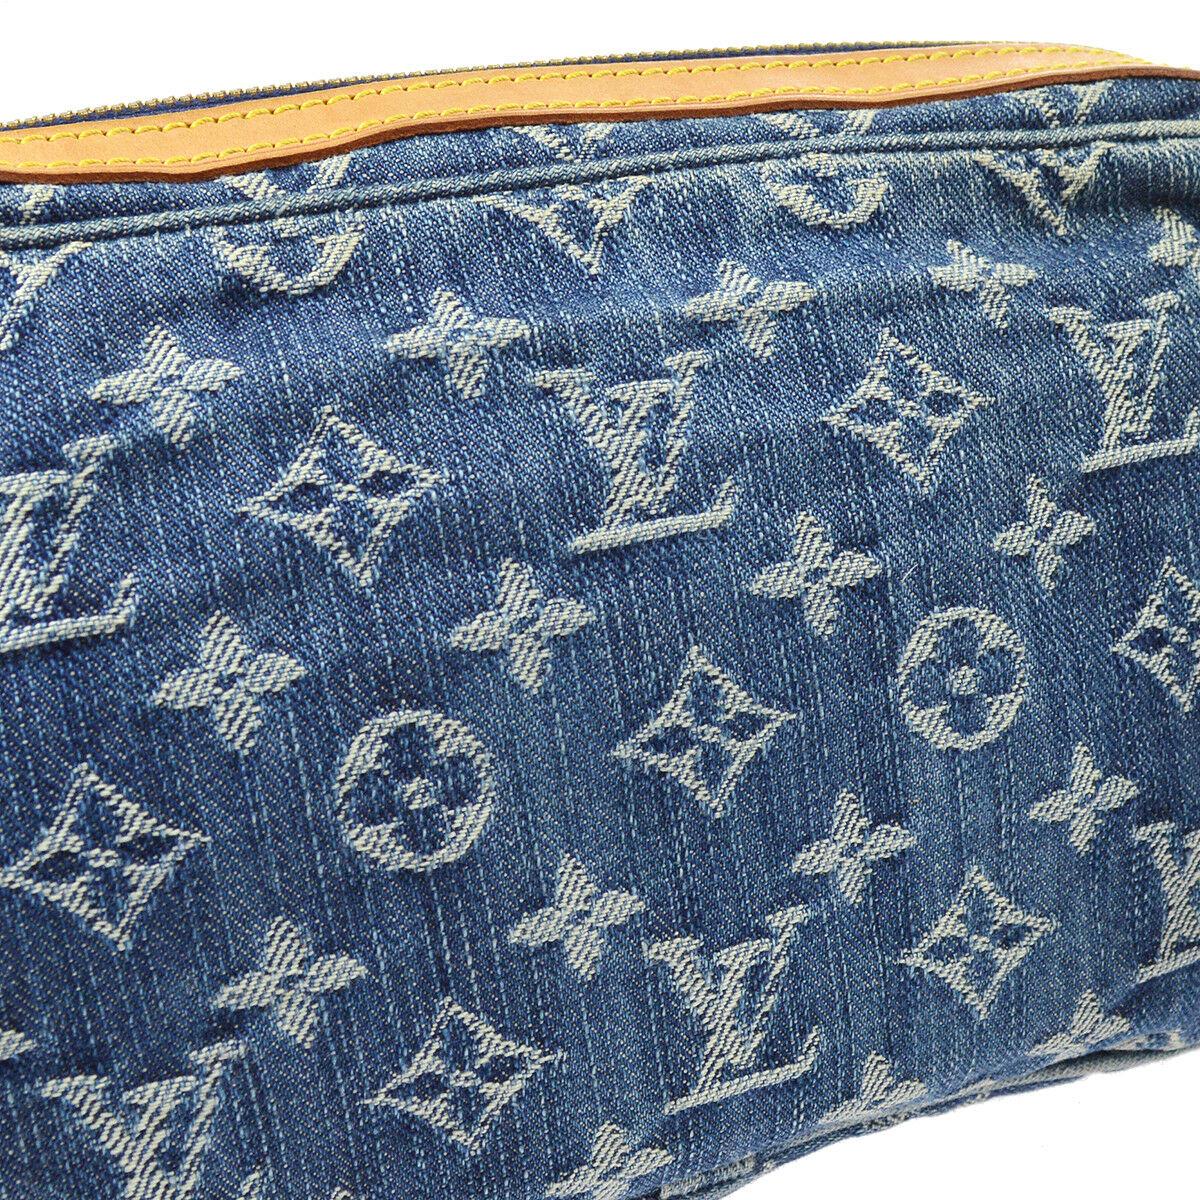 Louis Vuitton Blue Jean Denim Monogram Bum Fanny Pack Gürteltasche

Denim
Leder
Goldfarbene Hardware
Gewebtes Futter
Datumscode vorhanden
Hergestellt in Frankreich
Verstellbarer Gürtel Größe 34-45